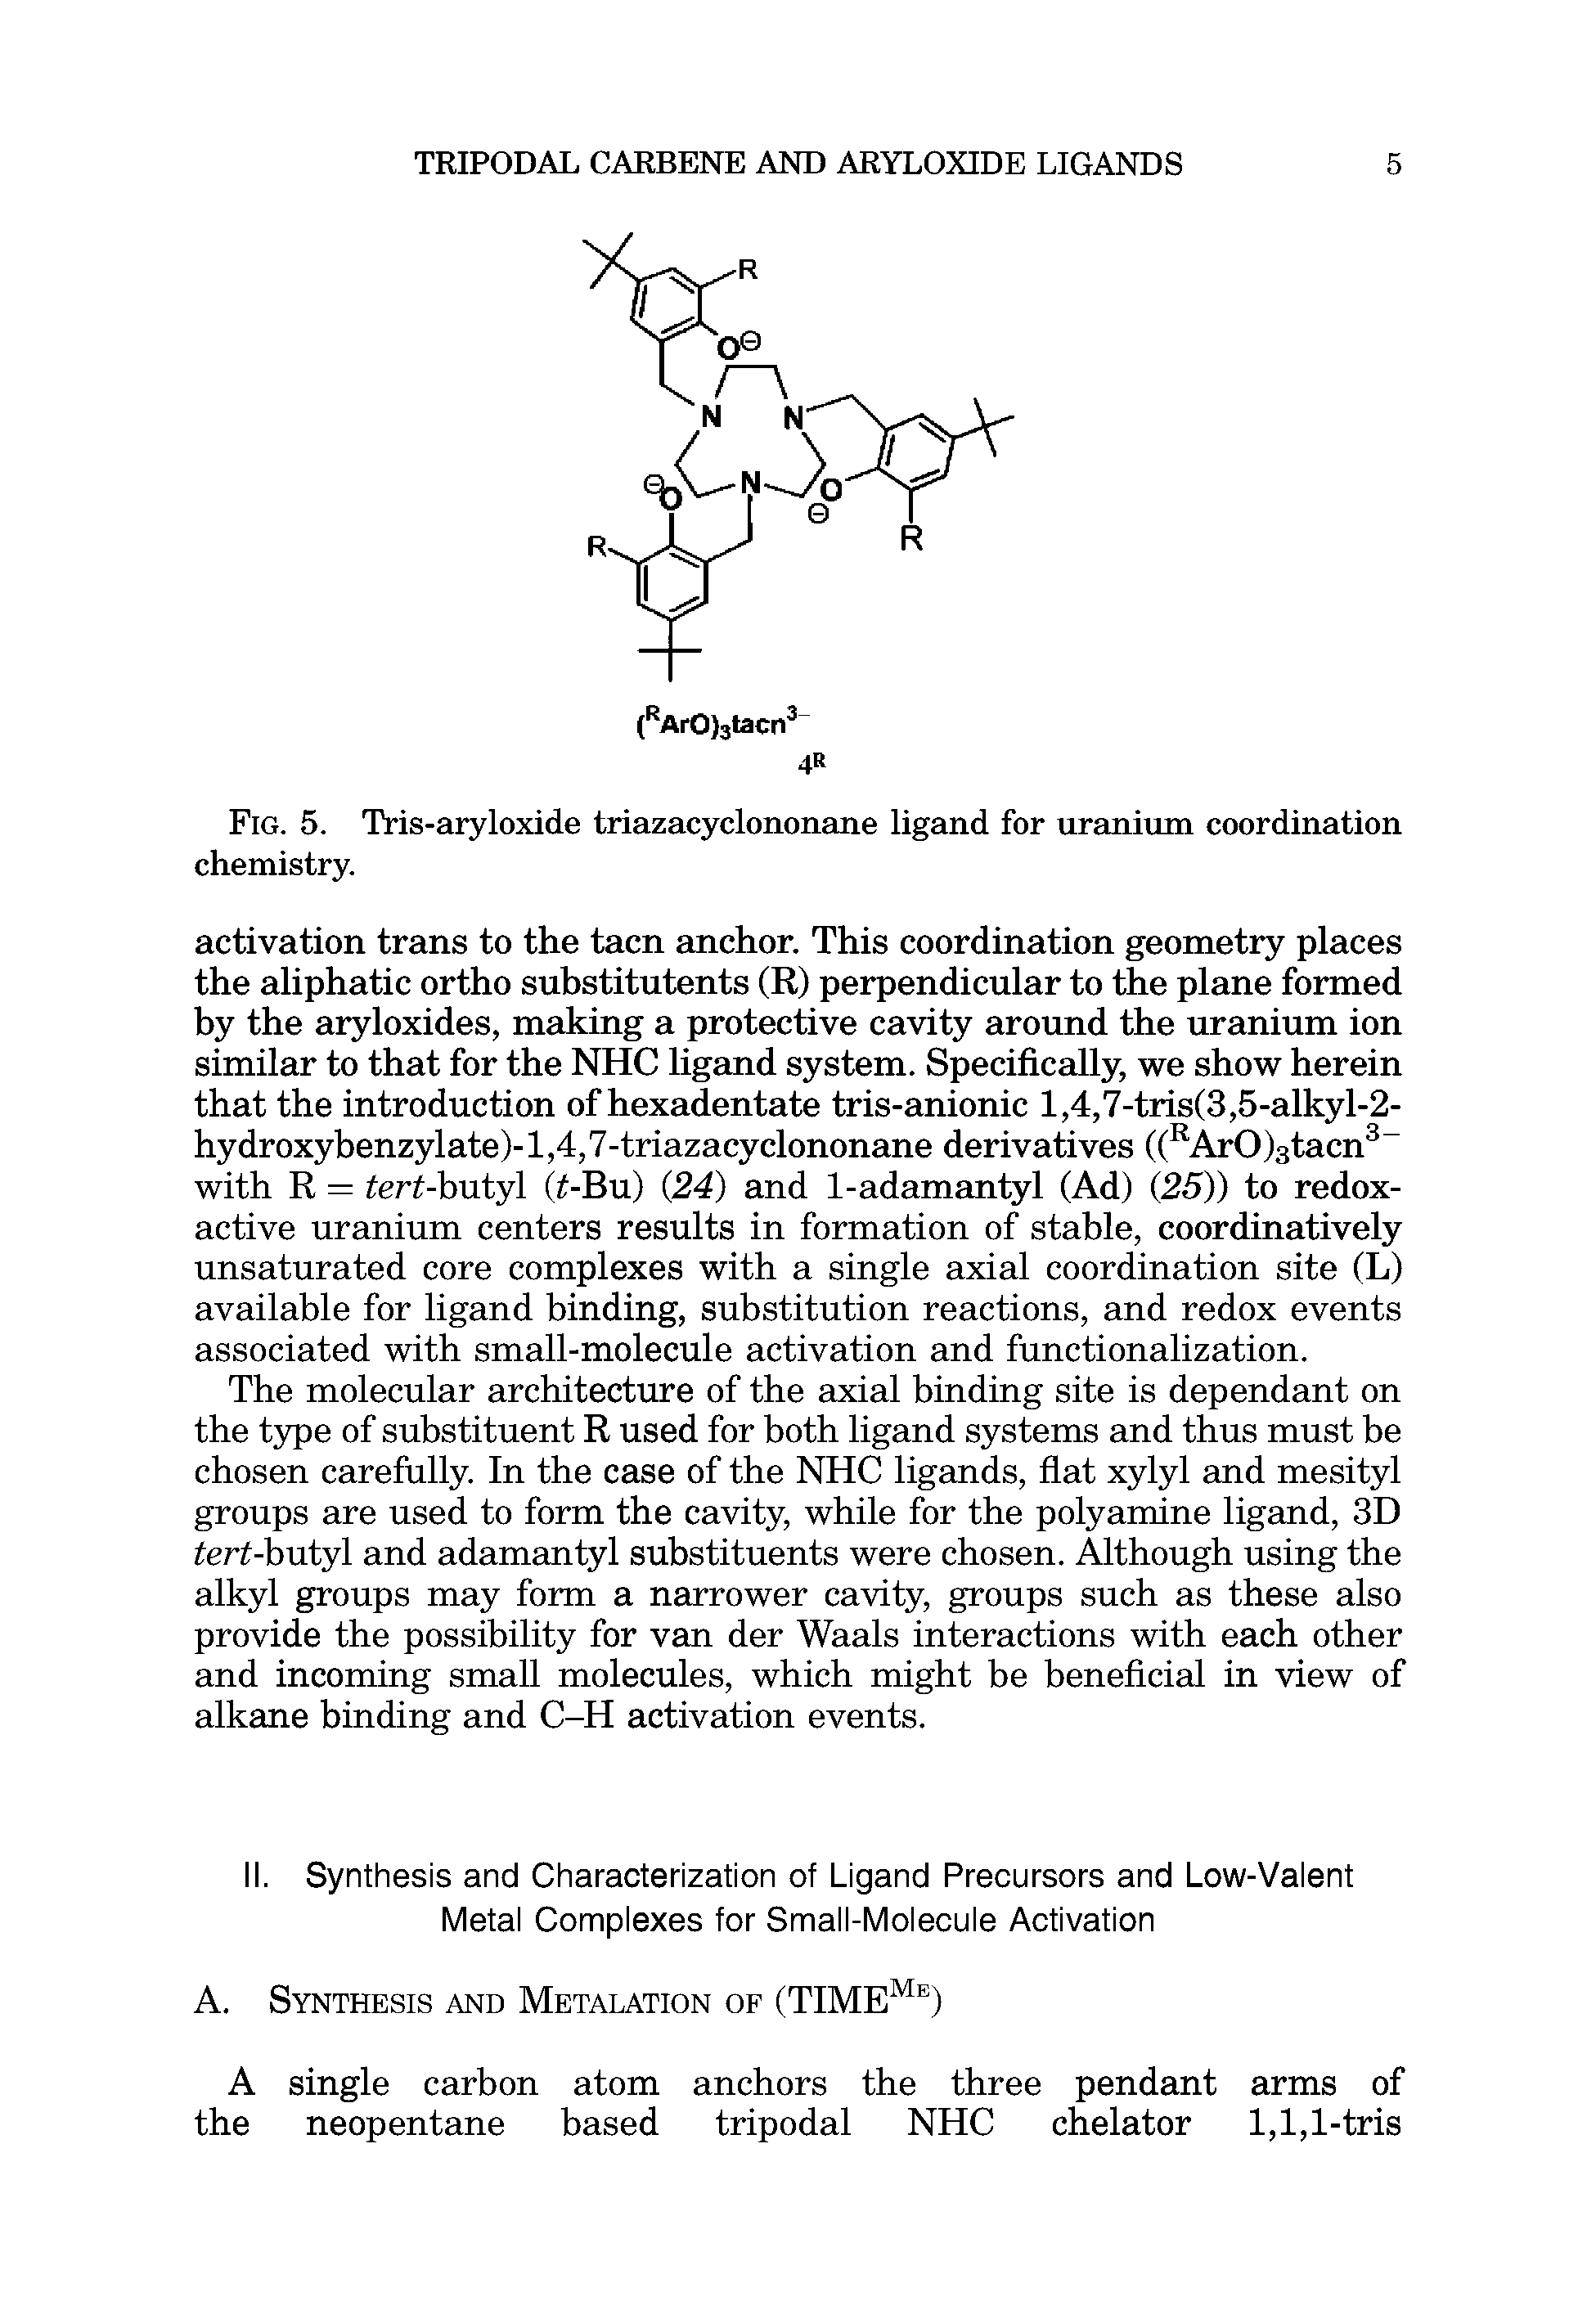 Fig. 5. Tris-aryloxide triazacyclononane ligand for uranium coordination chemistry.